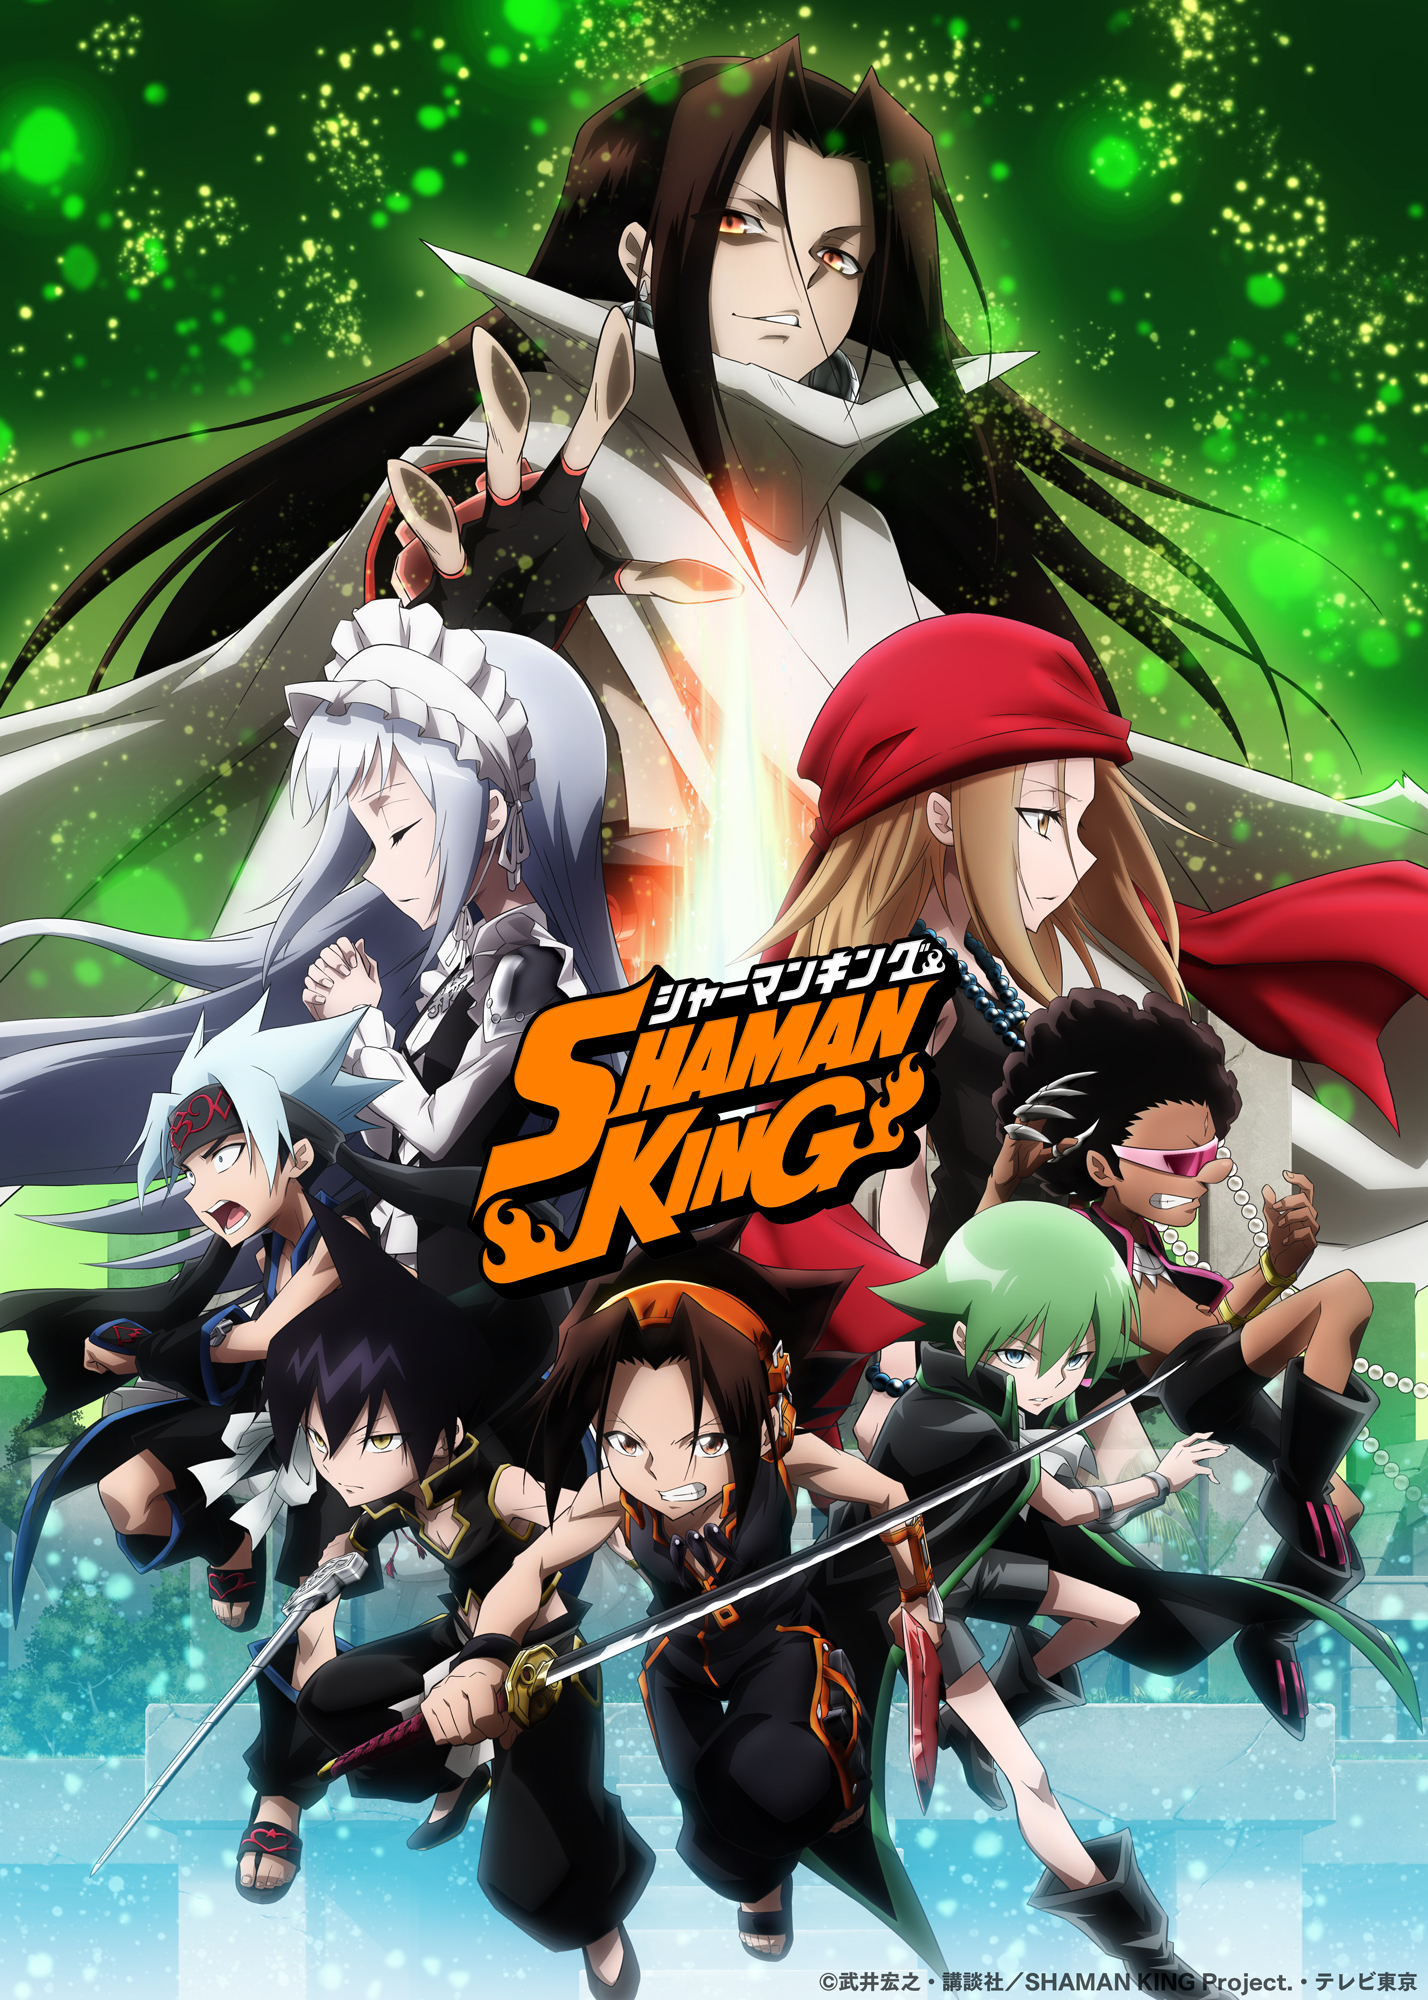 Ny Shaman King anime trailer